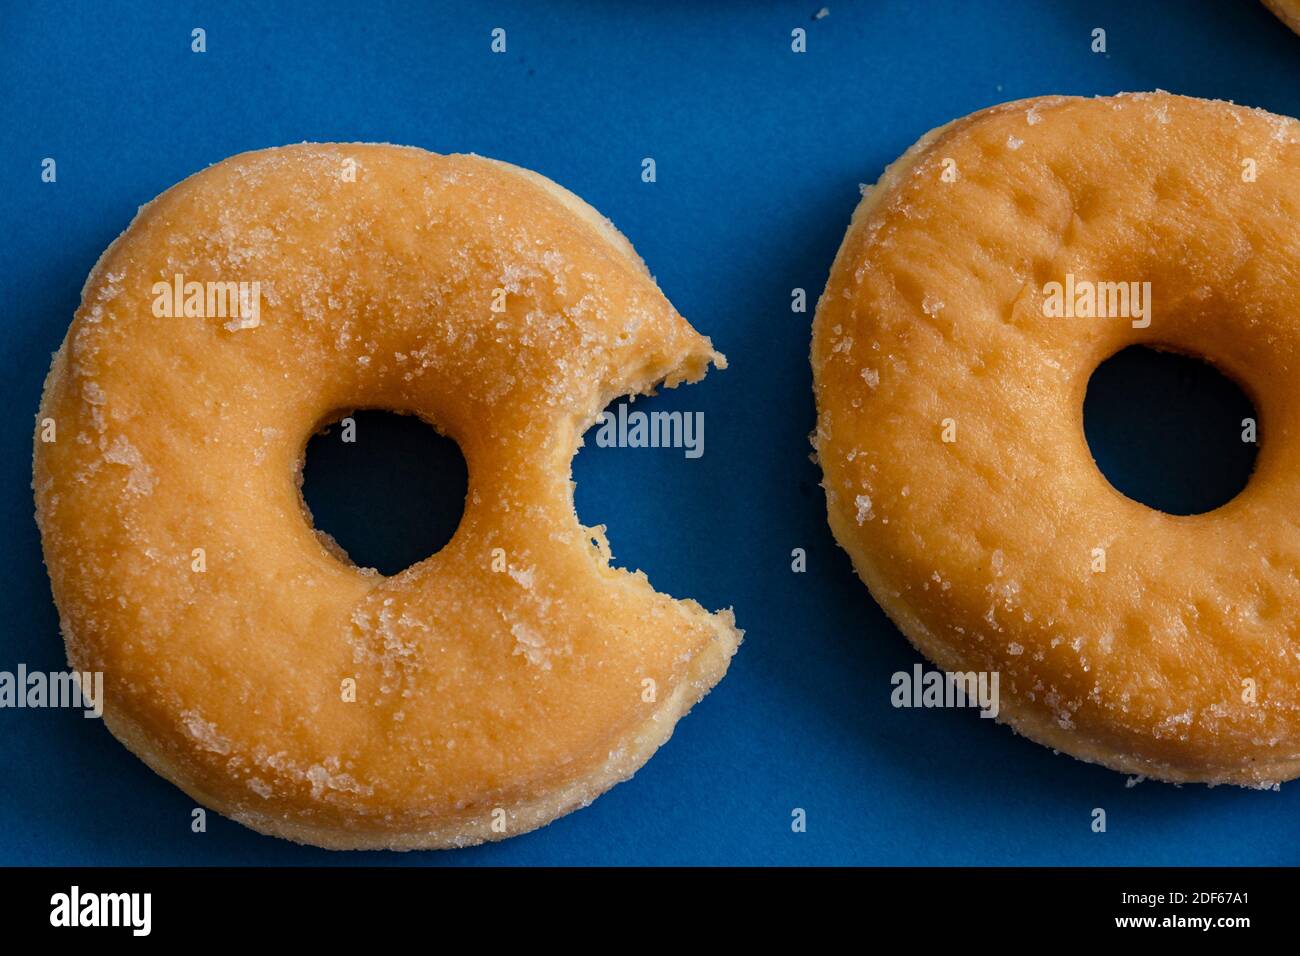 Donut mordido sobre fondo azul. Foto de stock